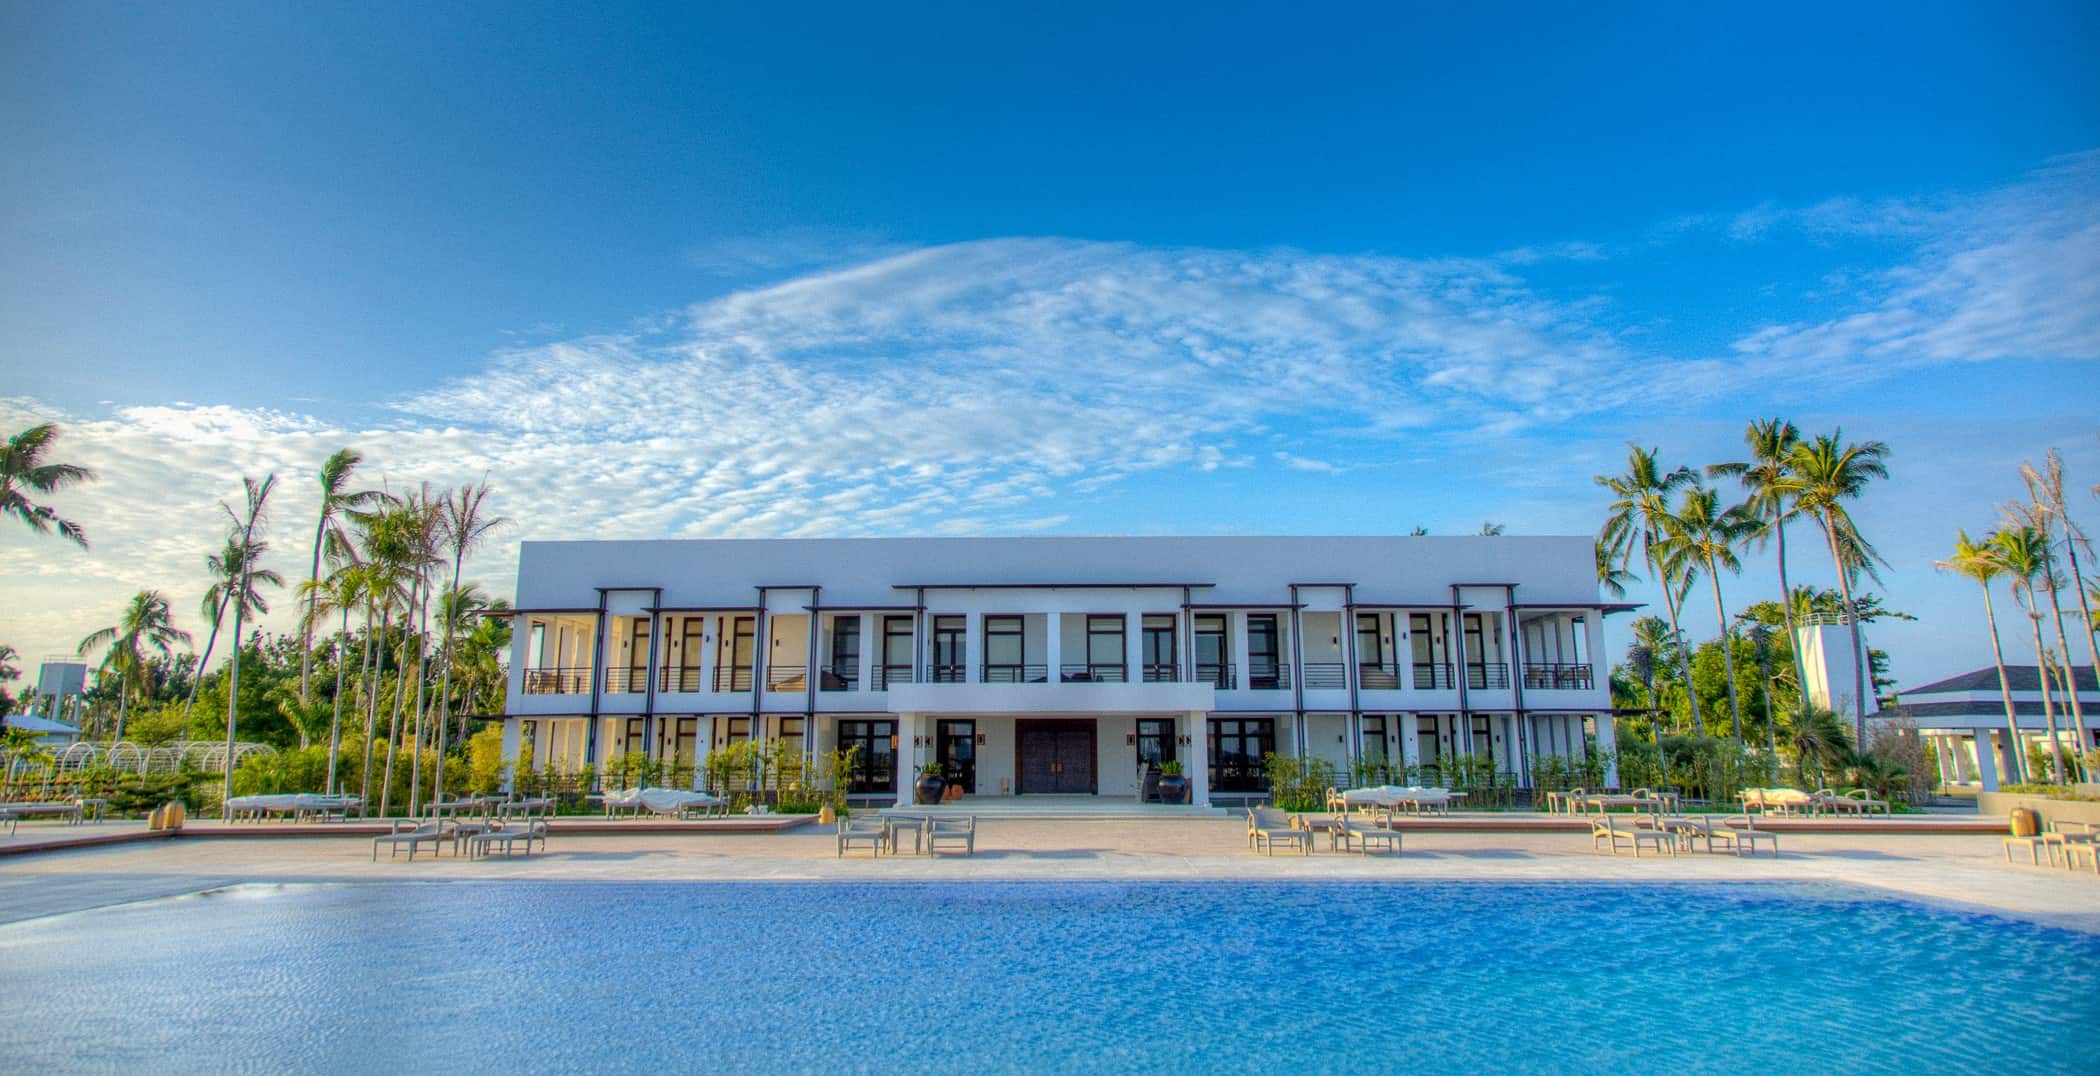 Kandaya Luxury Resort Daanbantayan Cebu